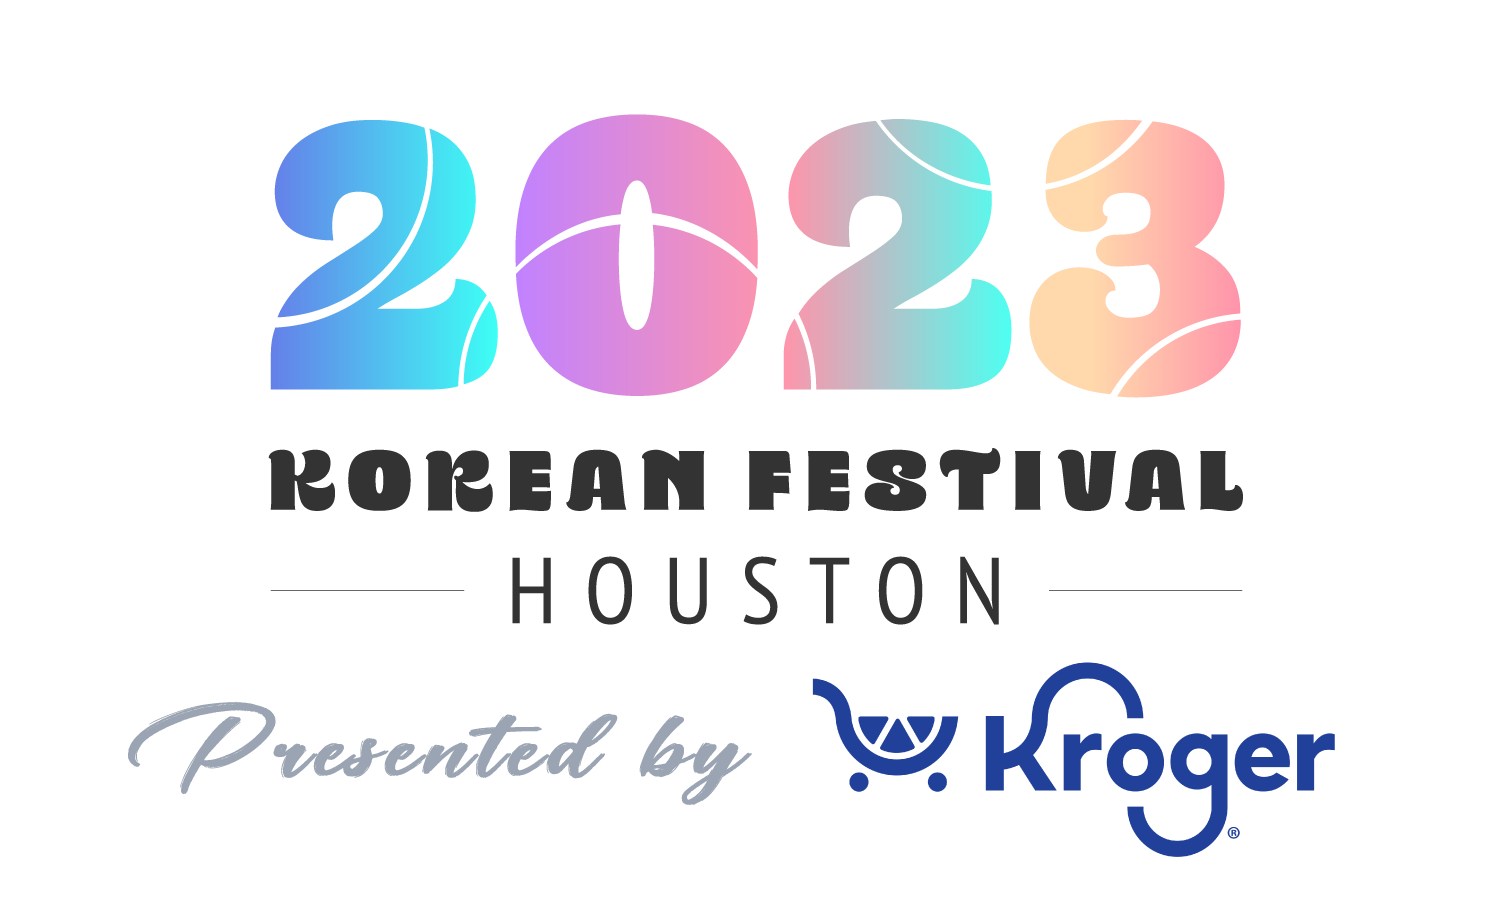 Korean Festival Houston